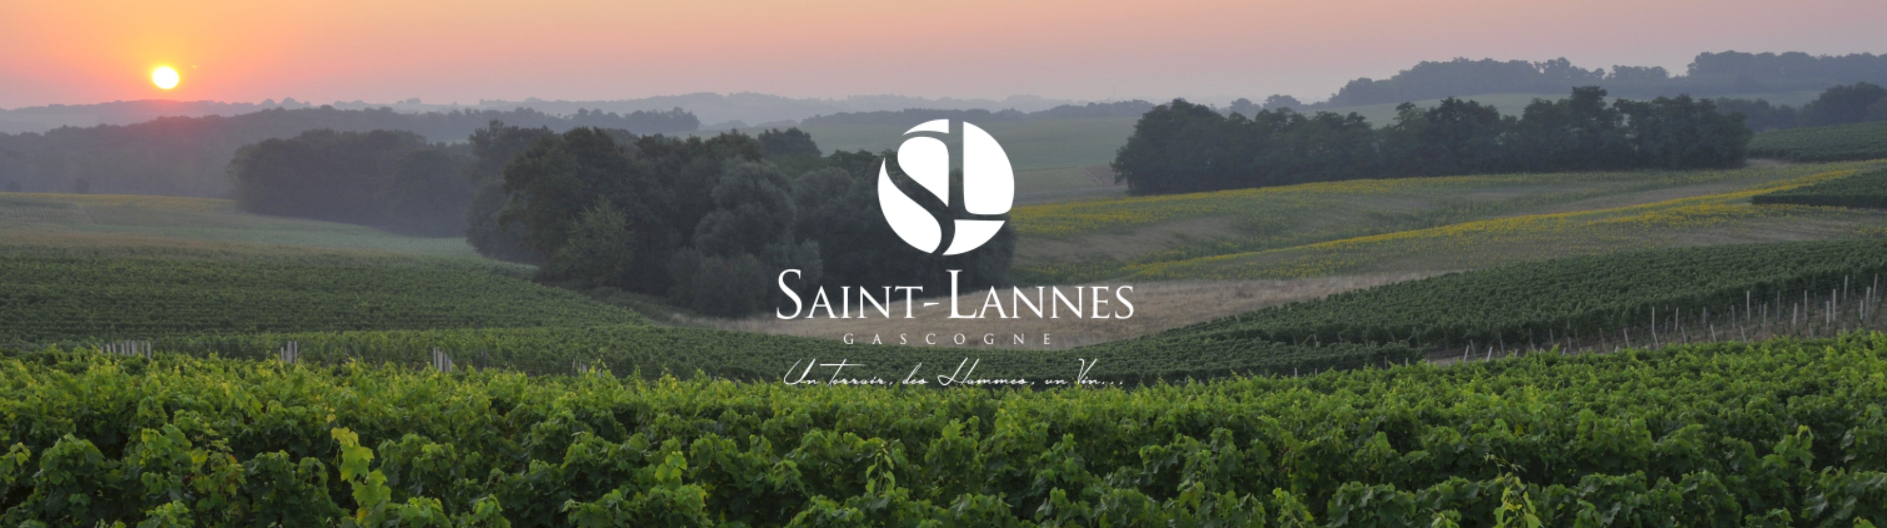 Saint Lannes vins gascogne